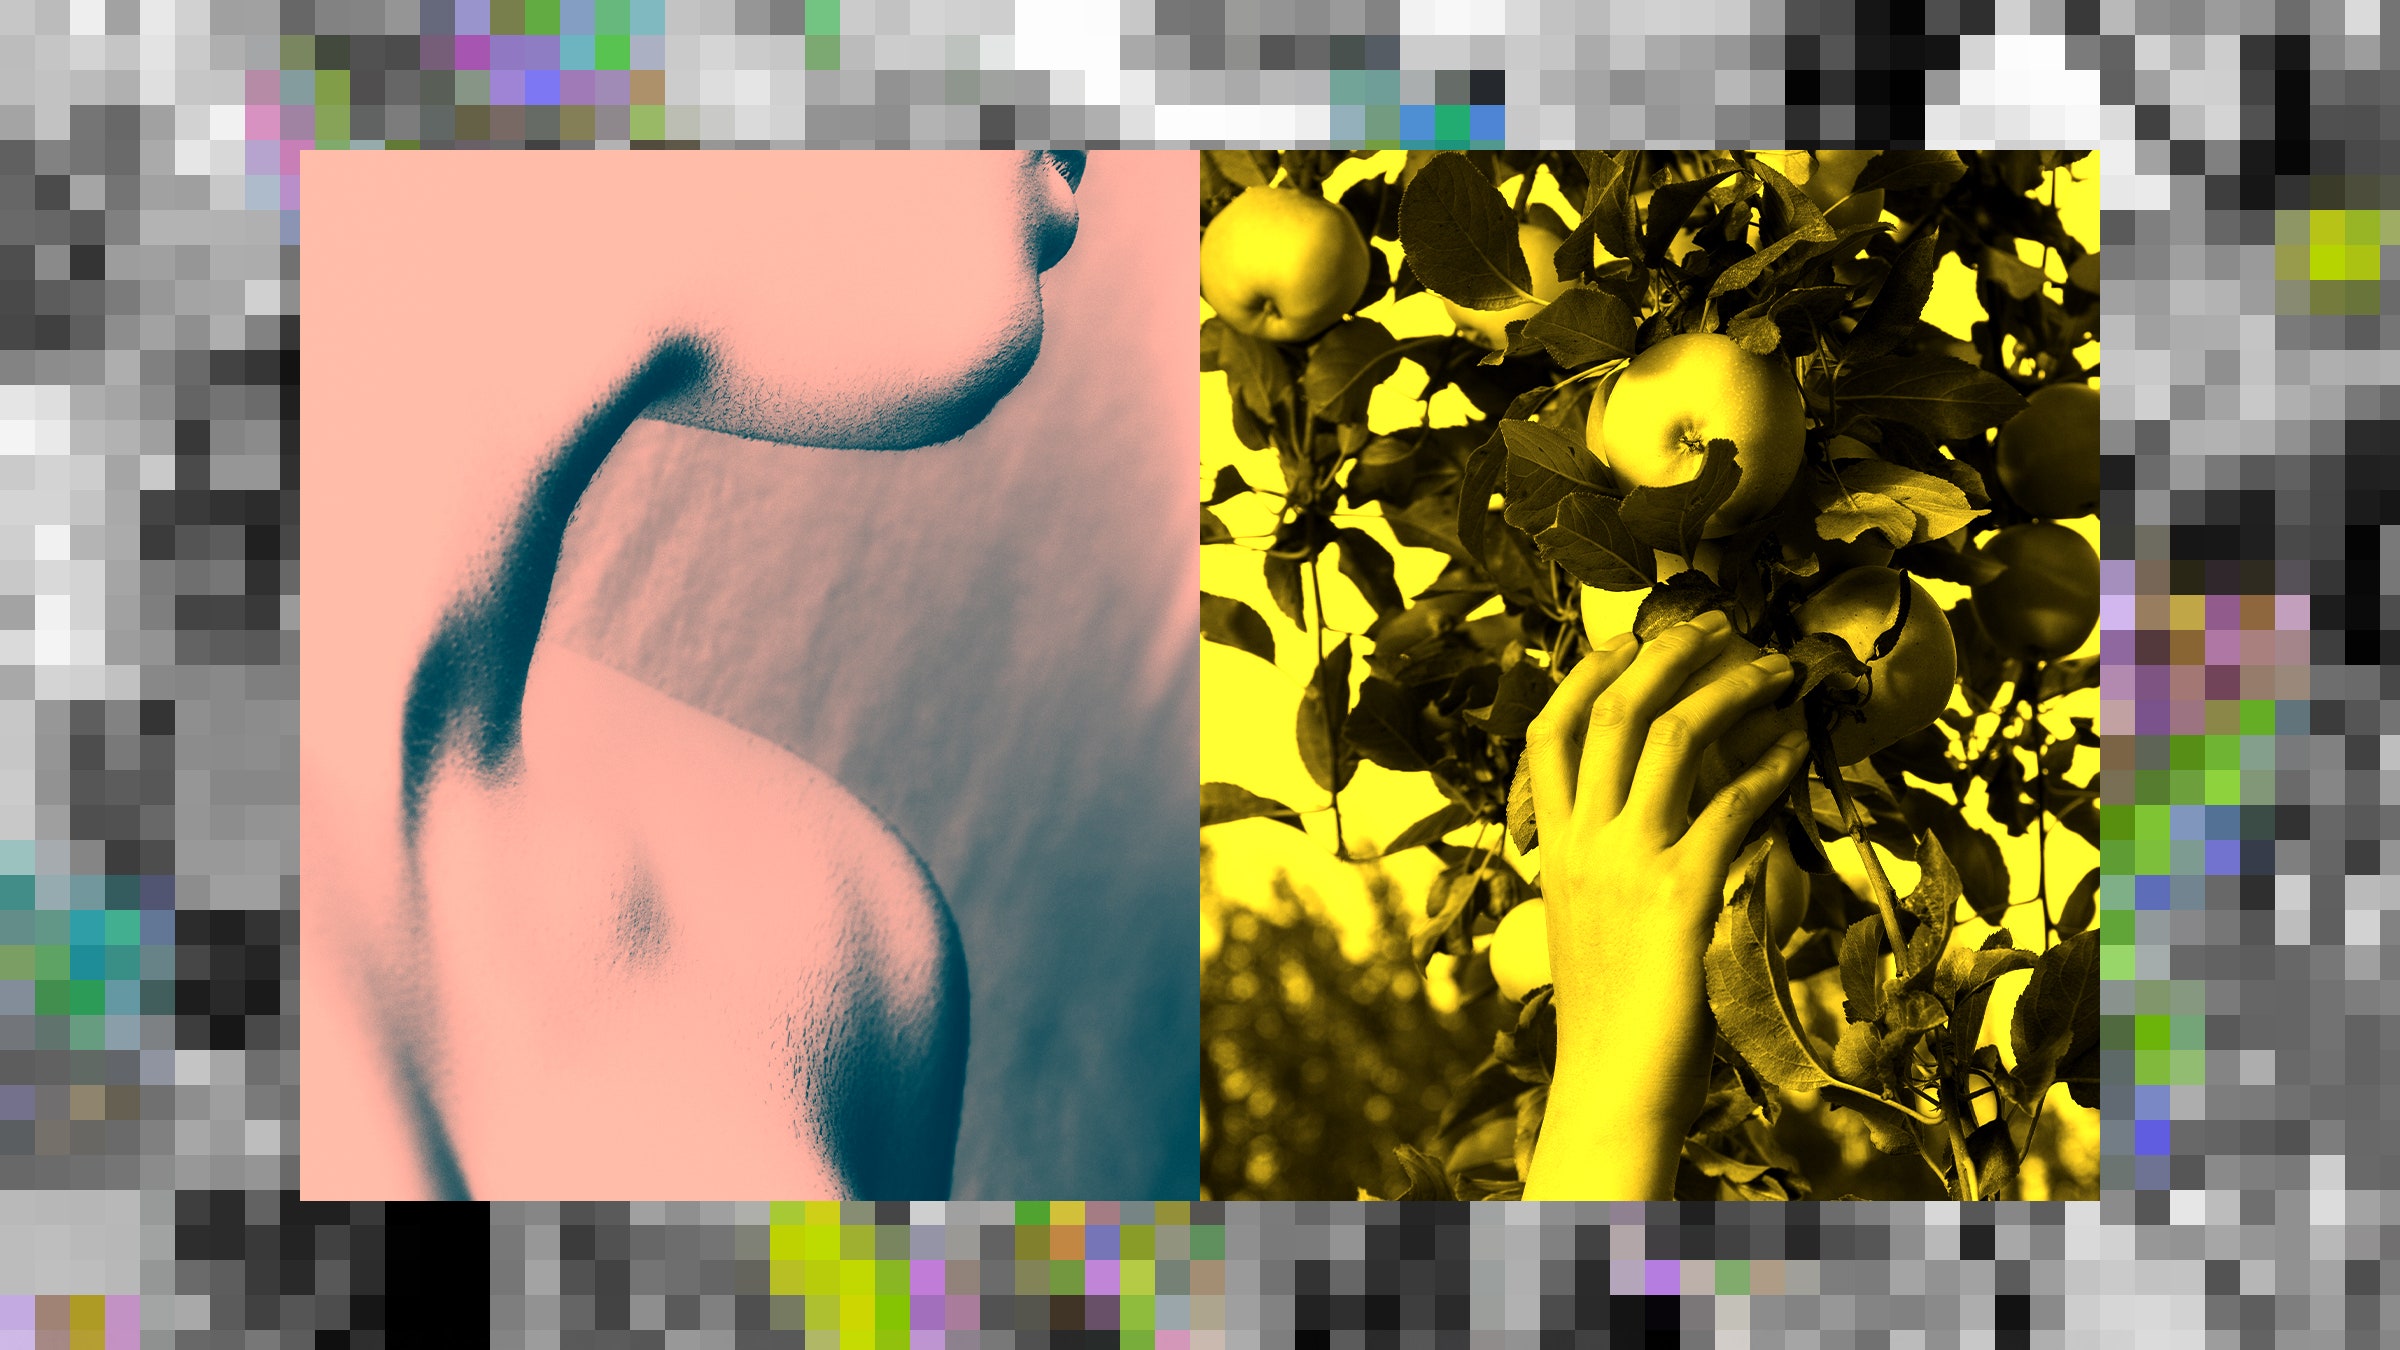 Colagem de fotos de um homem nu cortado, uma mão colhendo uma maçã de uma árvore e pixels